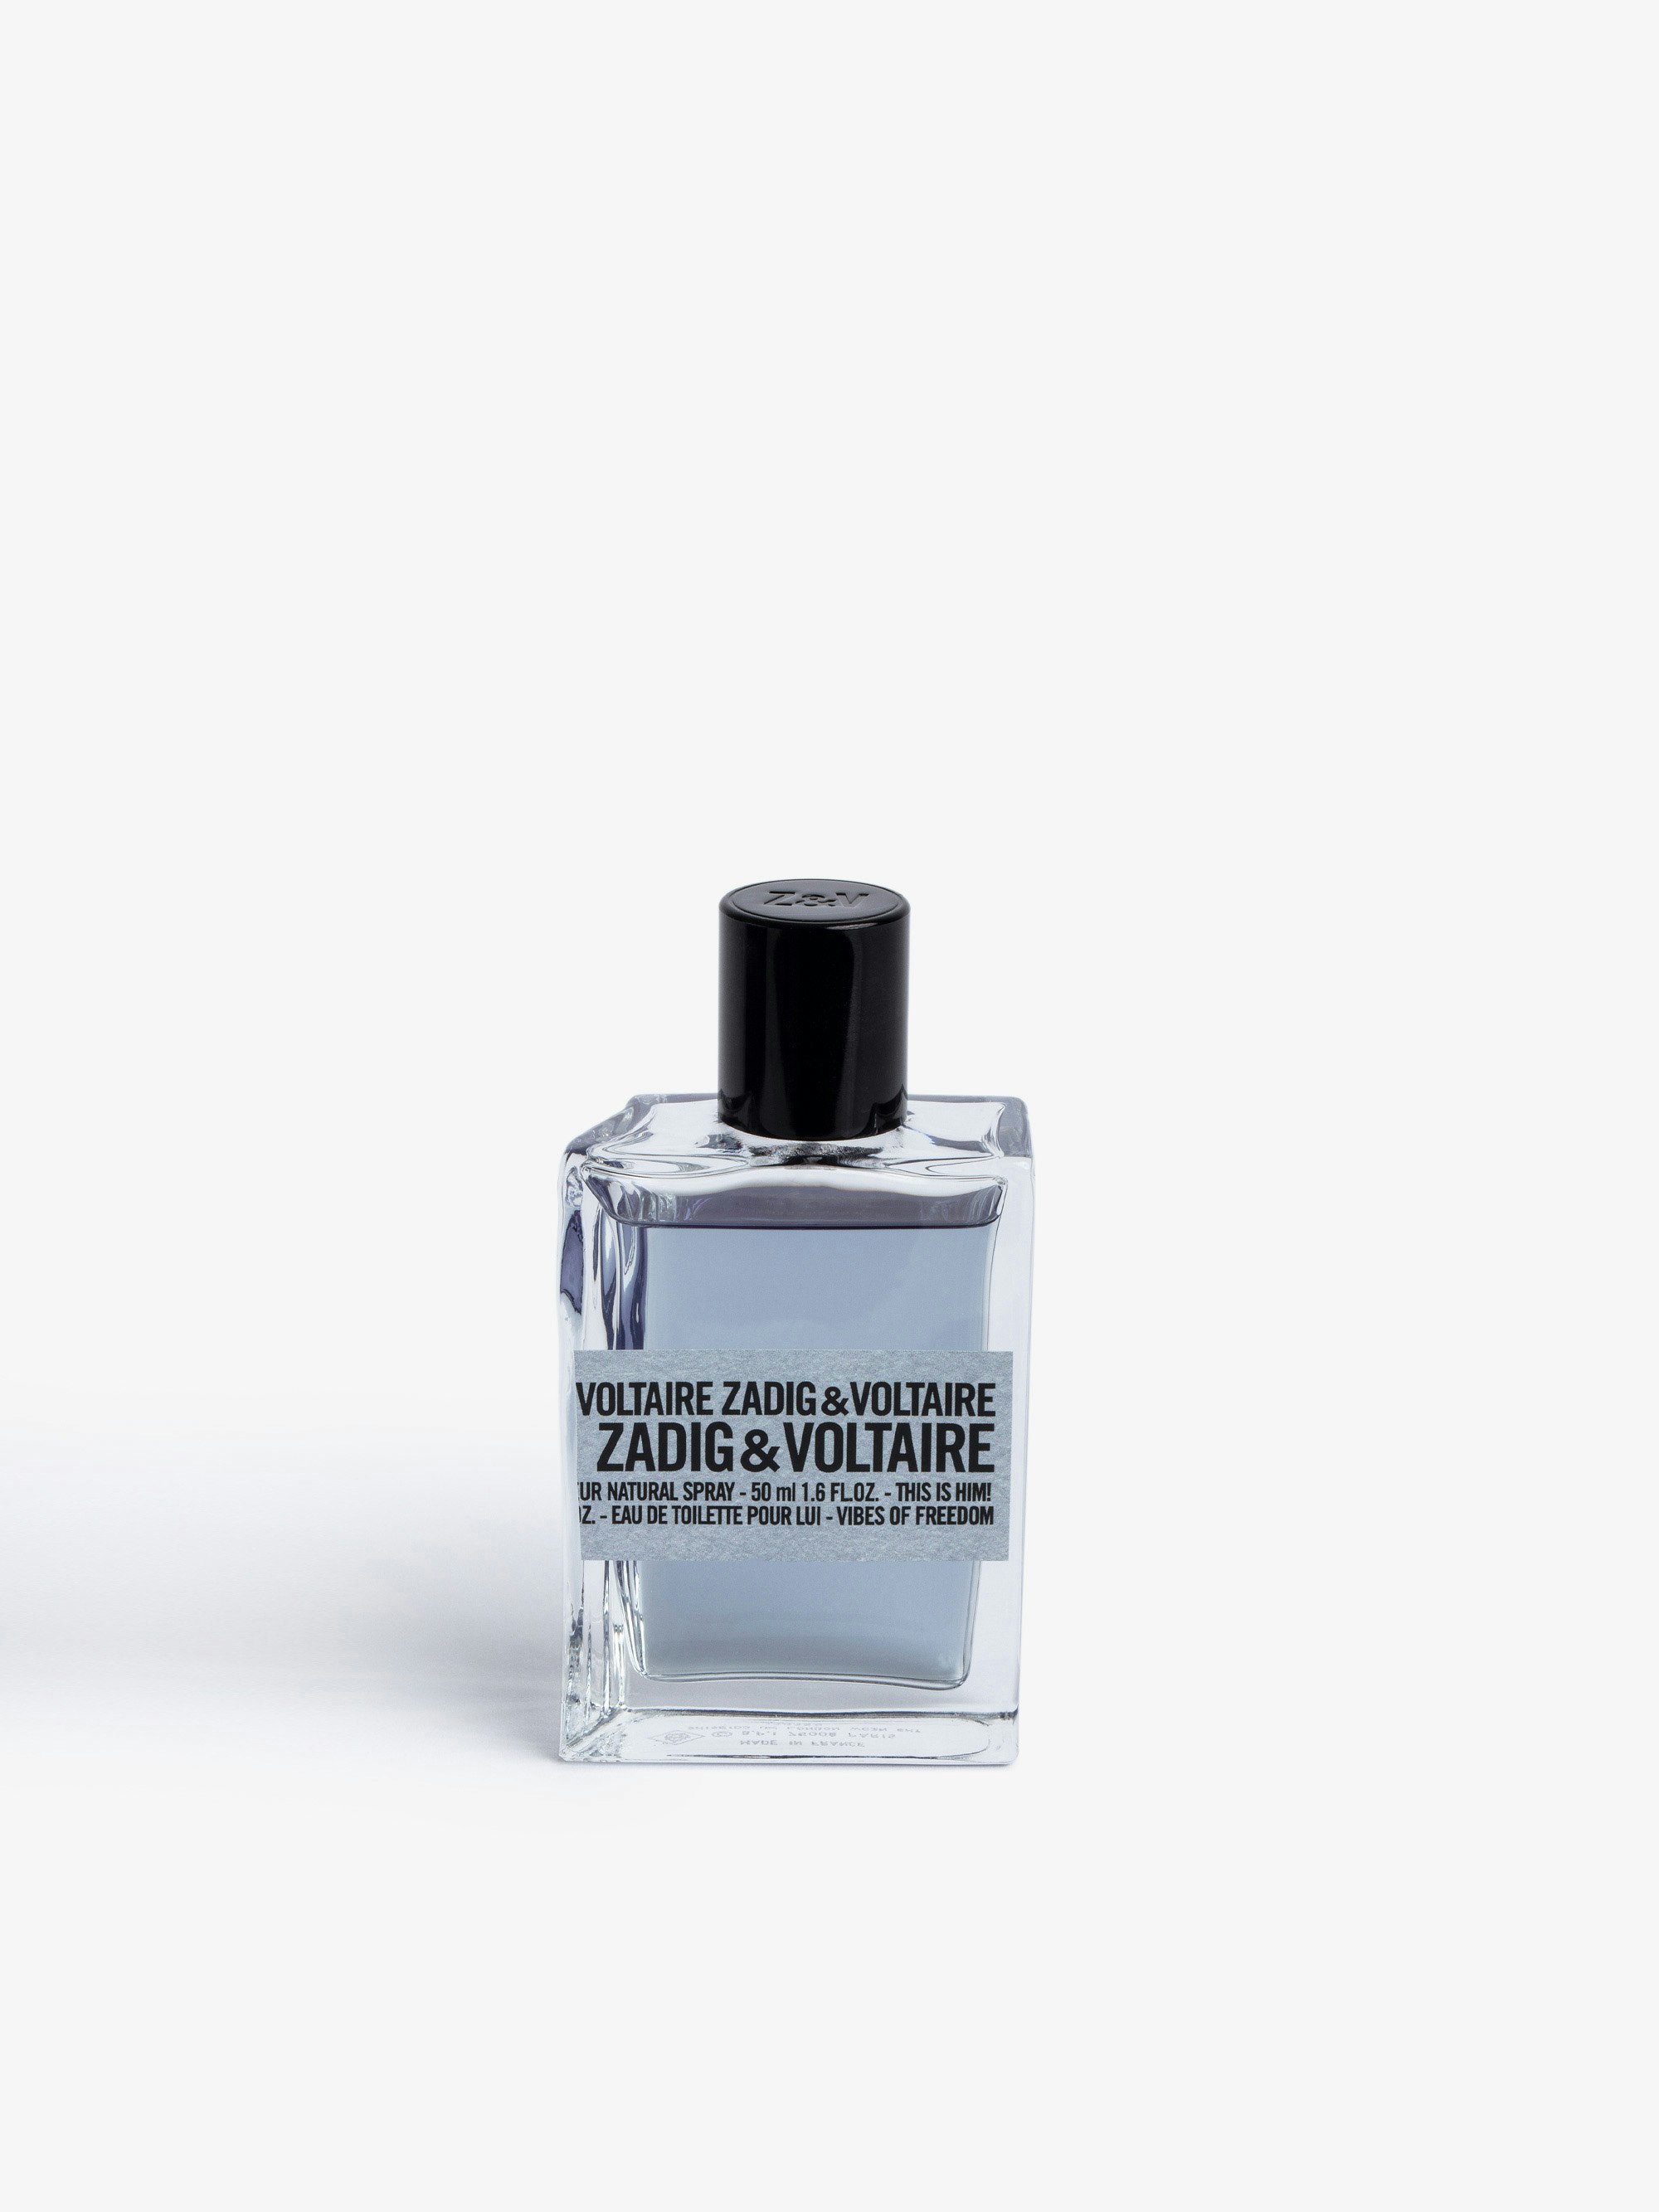 Parfüm This Is Him! Vibes of Freedom 50ML - Aromatische, leicht säuerliche Noten von kräftigem Lavendel und prickelnder Mandarine. Die Kardamomnoten werden für eine explosive würzige Mischung von Weihrauch eingefangen.